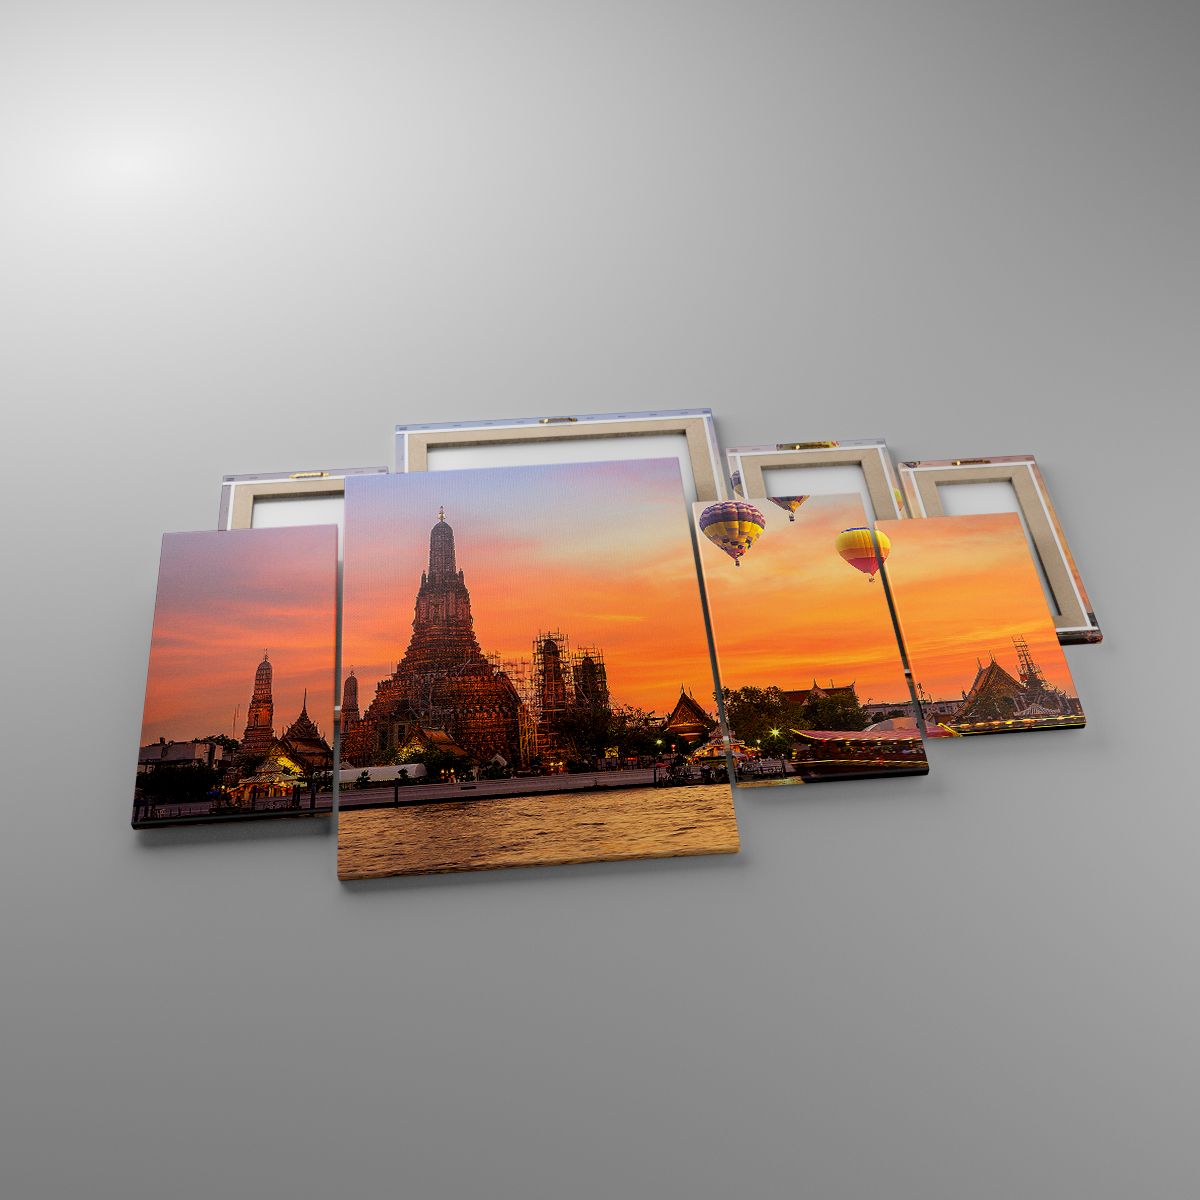 Leinwandbild Bangkok, Leinwandbild Tempel Der Morgenröte, Leinwandbild Thailand, Leinwandbild Luftballons, Leinwandbild Asien